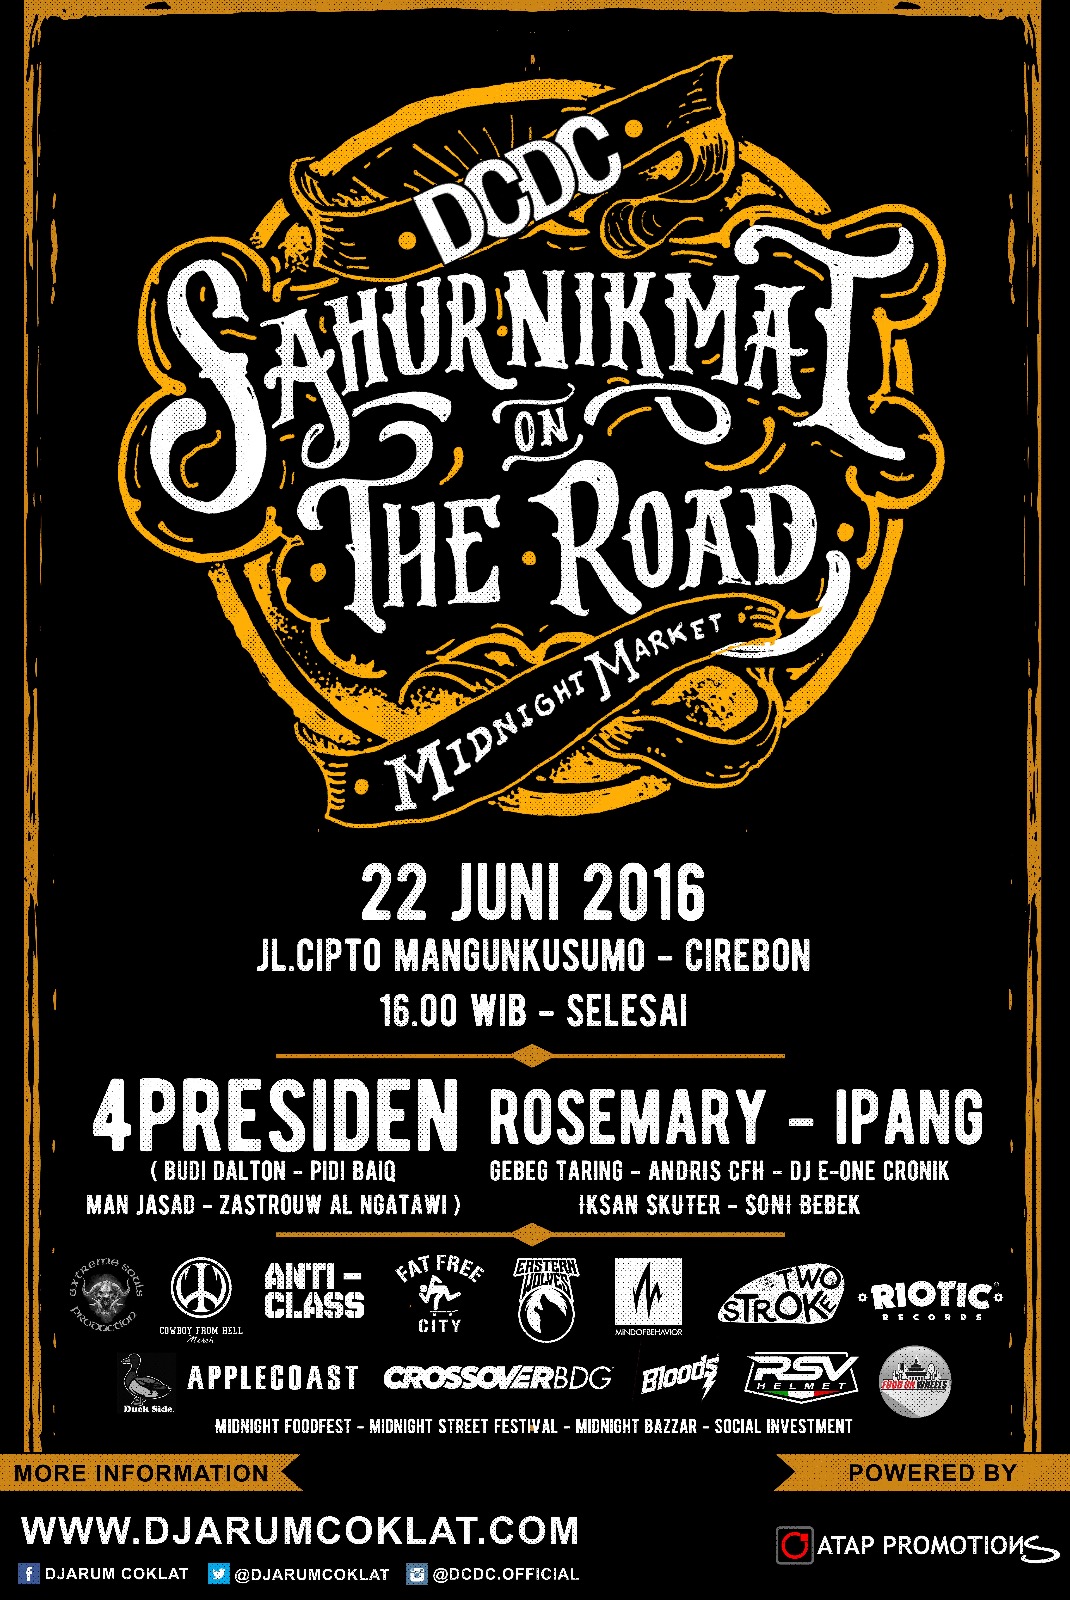 Sahur Nikmat On The Road: Cirebon 22 Juni 2016